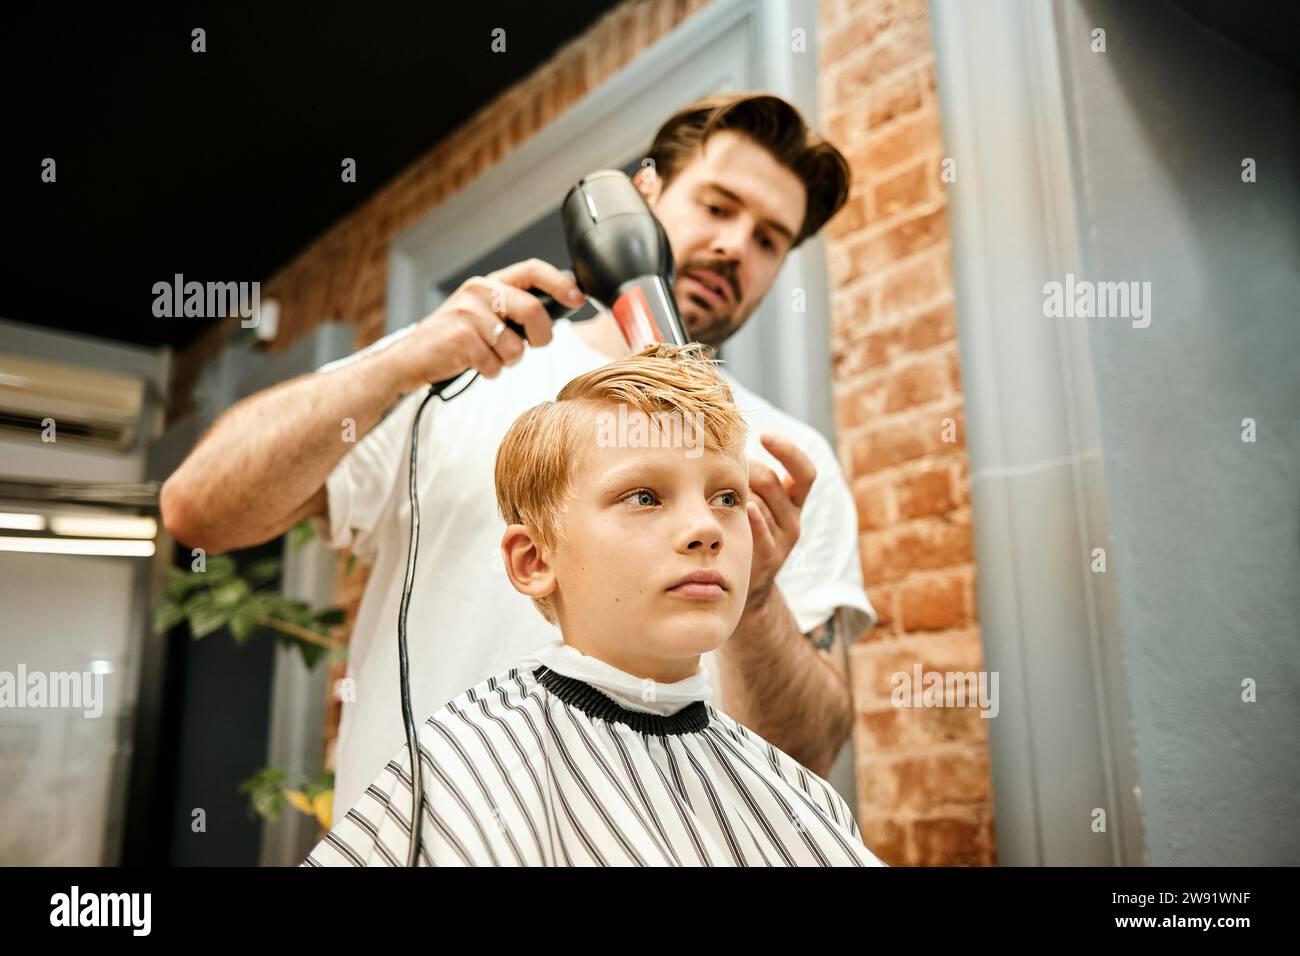 Friseur föhnt die Haare des Kunden im Salon Stockfoto